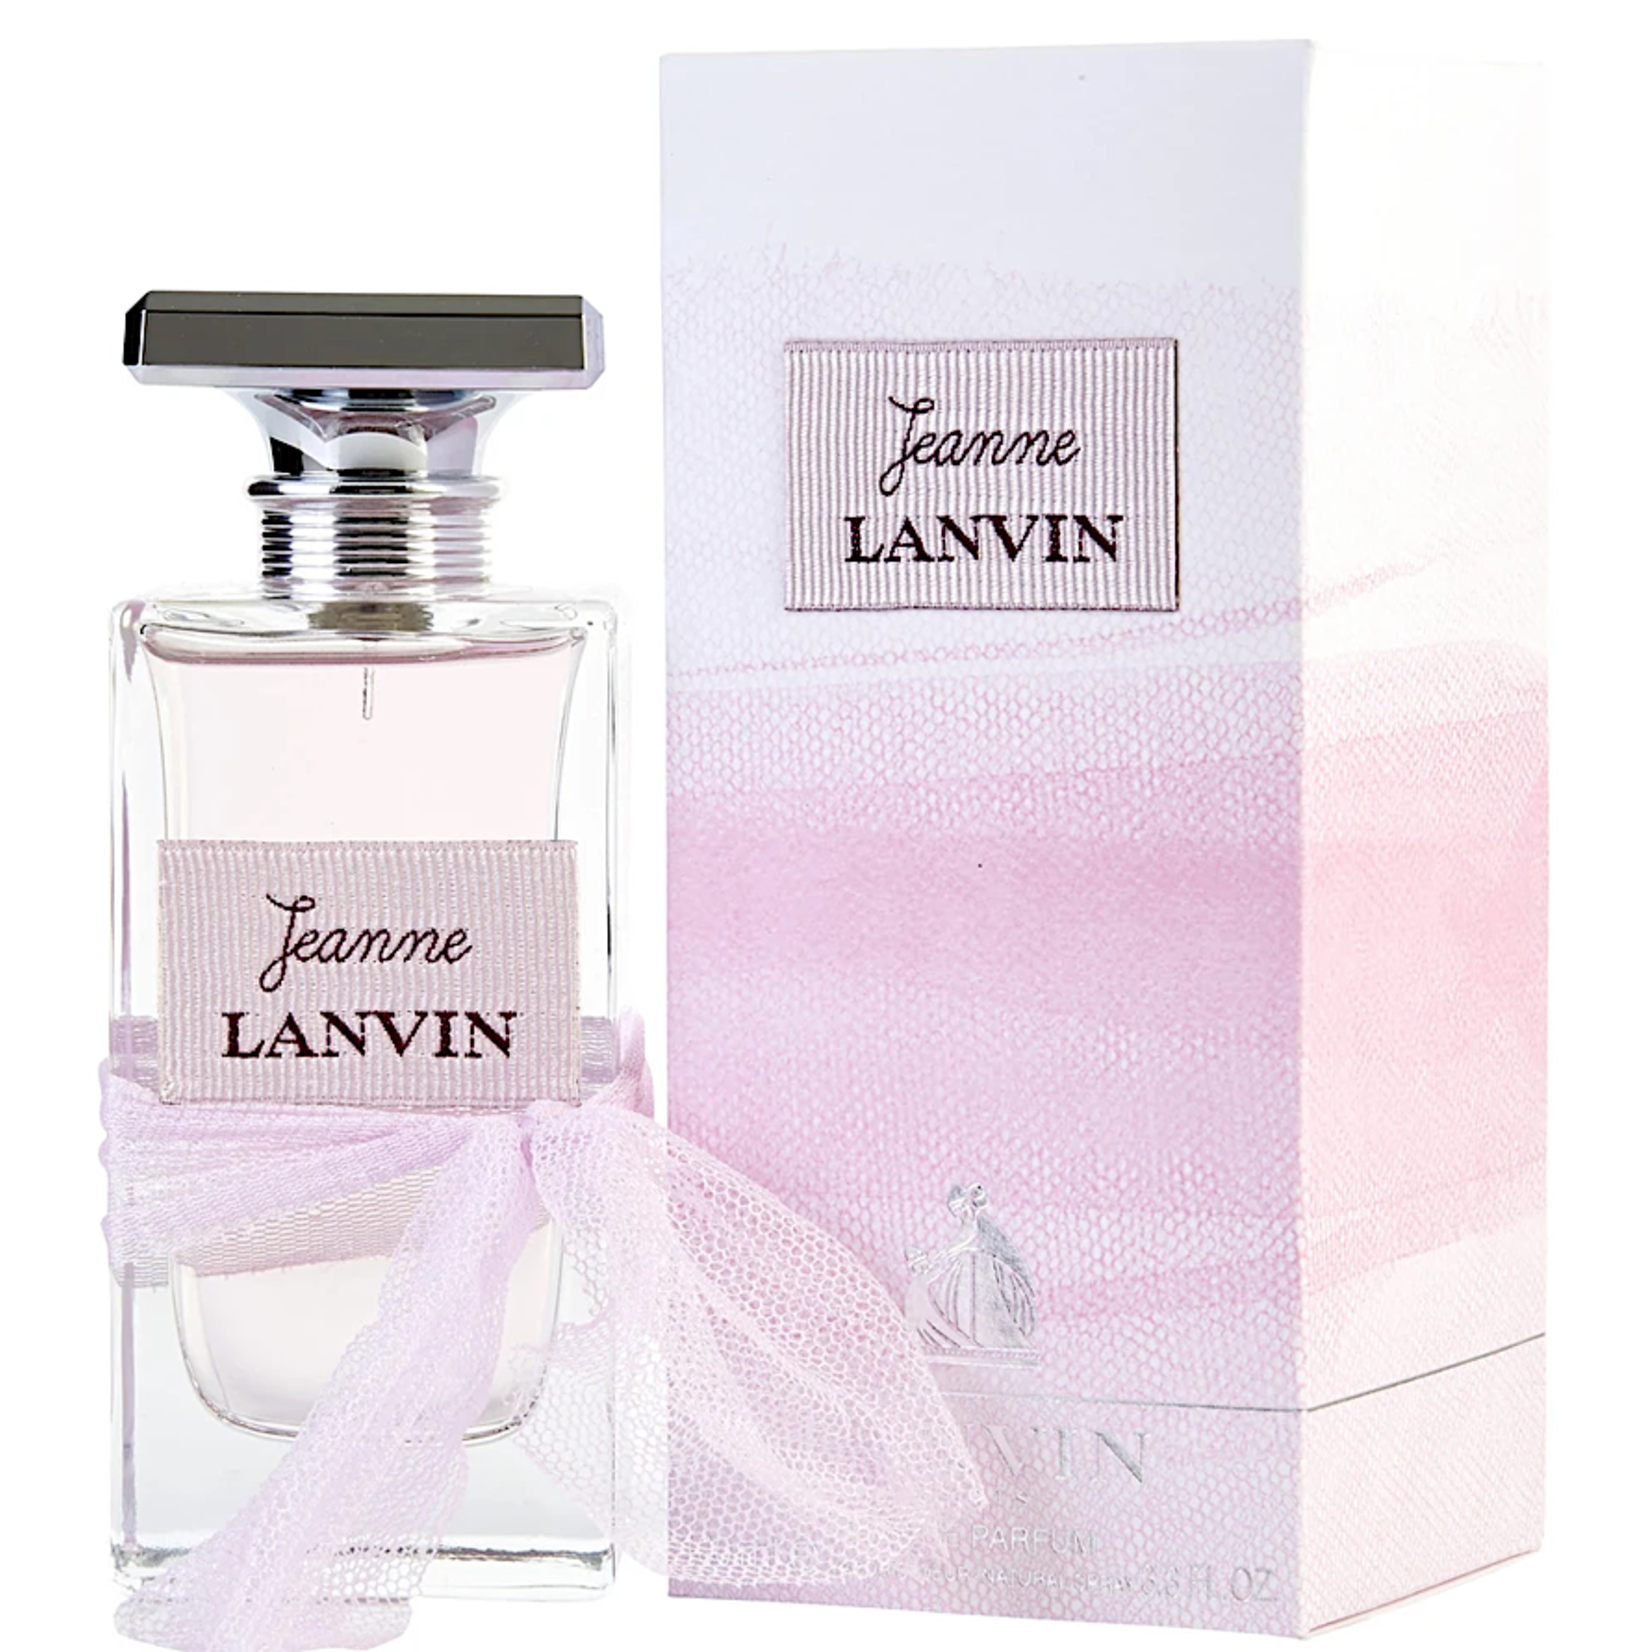 Lanvin Lanvin Jeanne Eau de Parfum